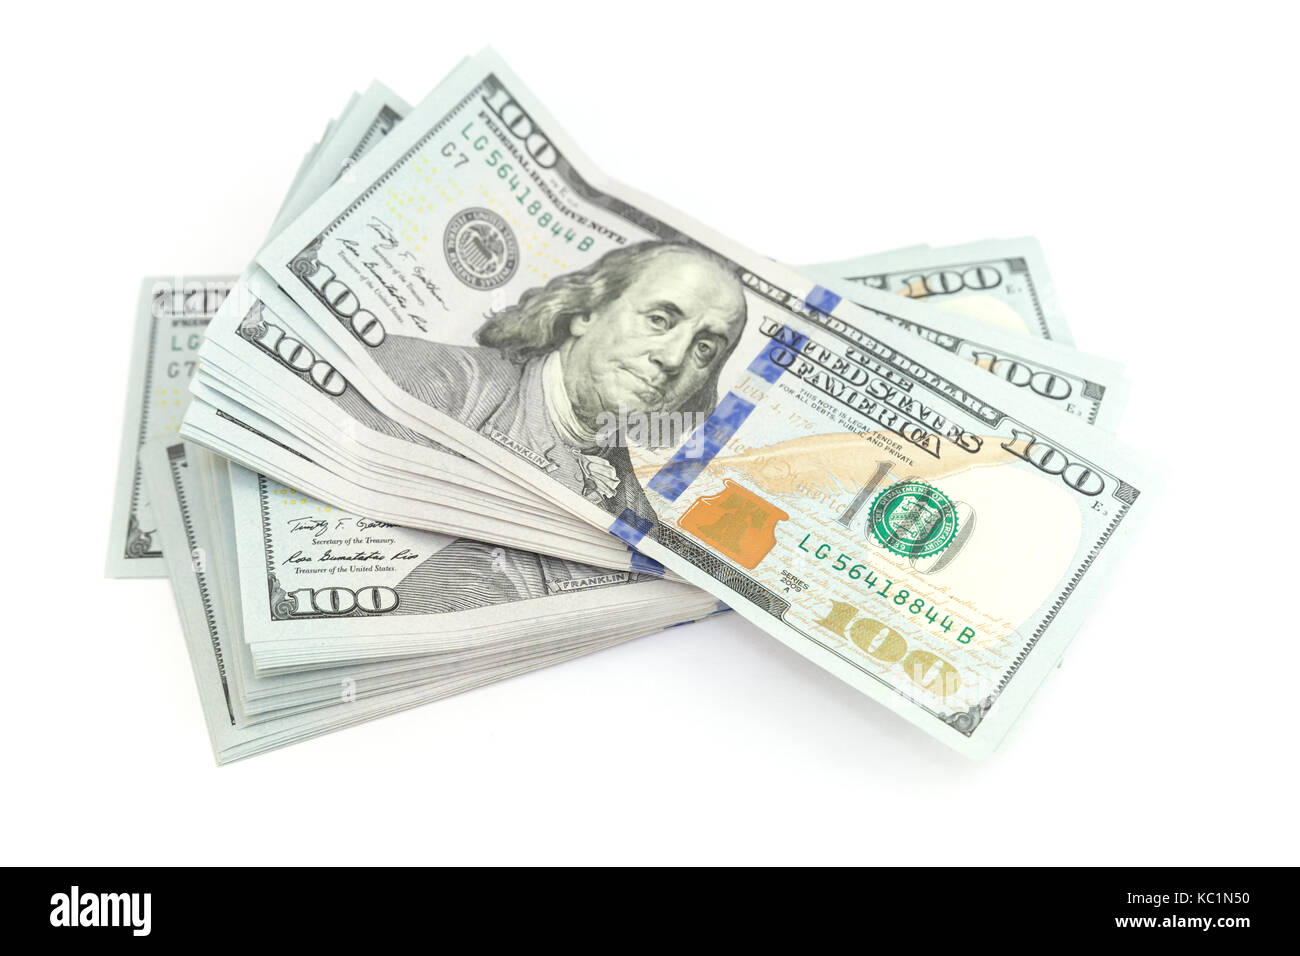 Stati Uniti valuta ufficiale del fascio di un centinaio di dollari isolato su sfondo bianco con ombra morbida Foto Stock